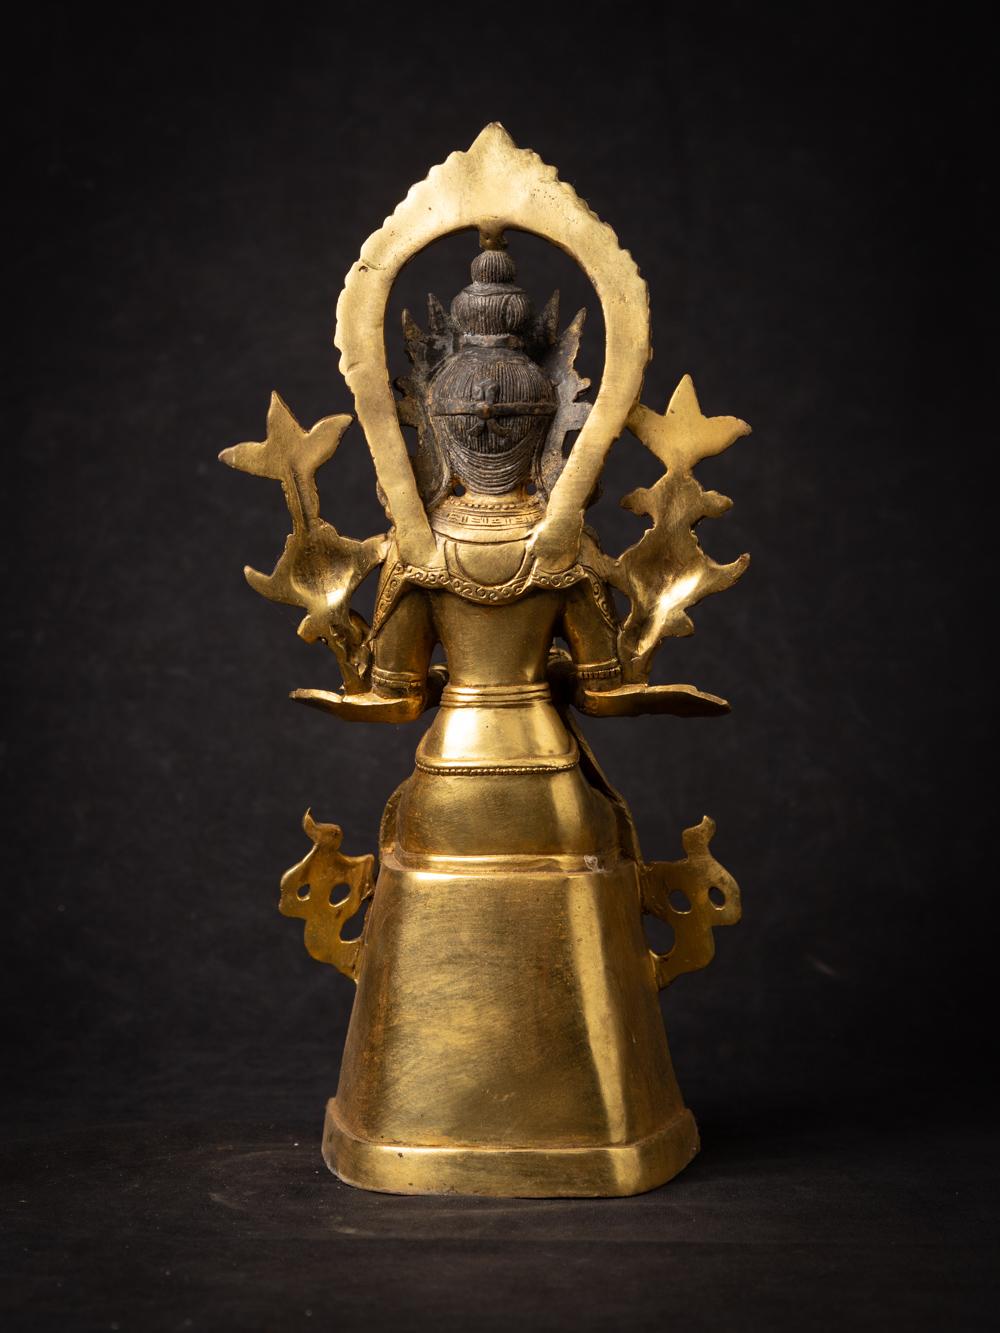 Faites l'expérience de la présence divine d'une statue de Bouddha Revereya en bronze du Népal, fabriquée avec révérence et dévotion. Cette pièce exquise, réalisée en bronze, mesure 31,5 cm de hauteur, 14,8 cm de largeur et 13,5 cm de profondeur. Sa